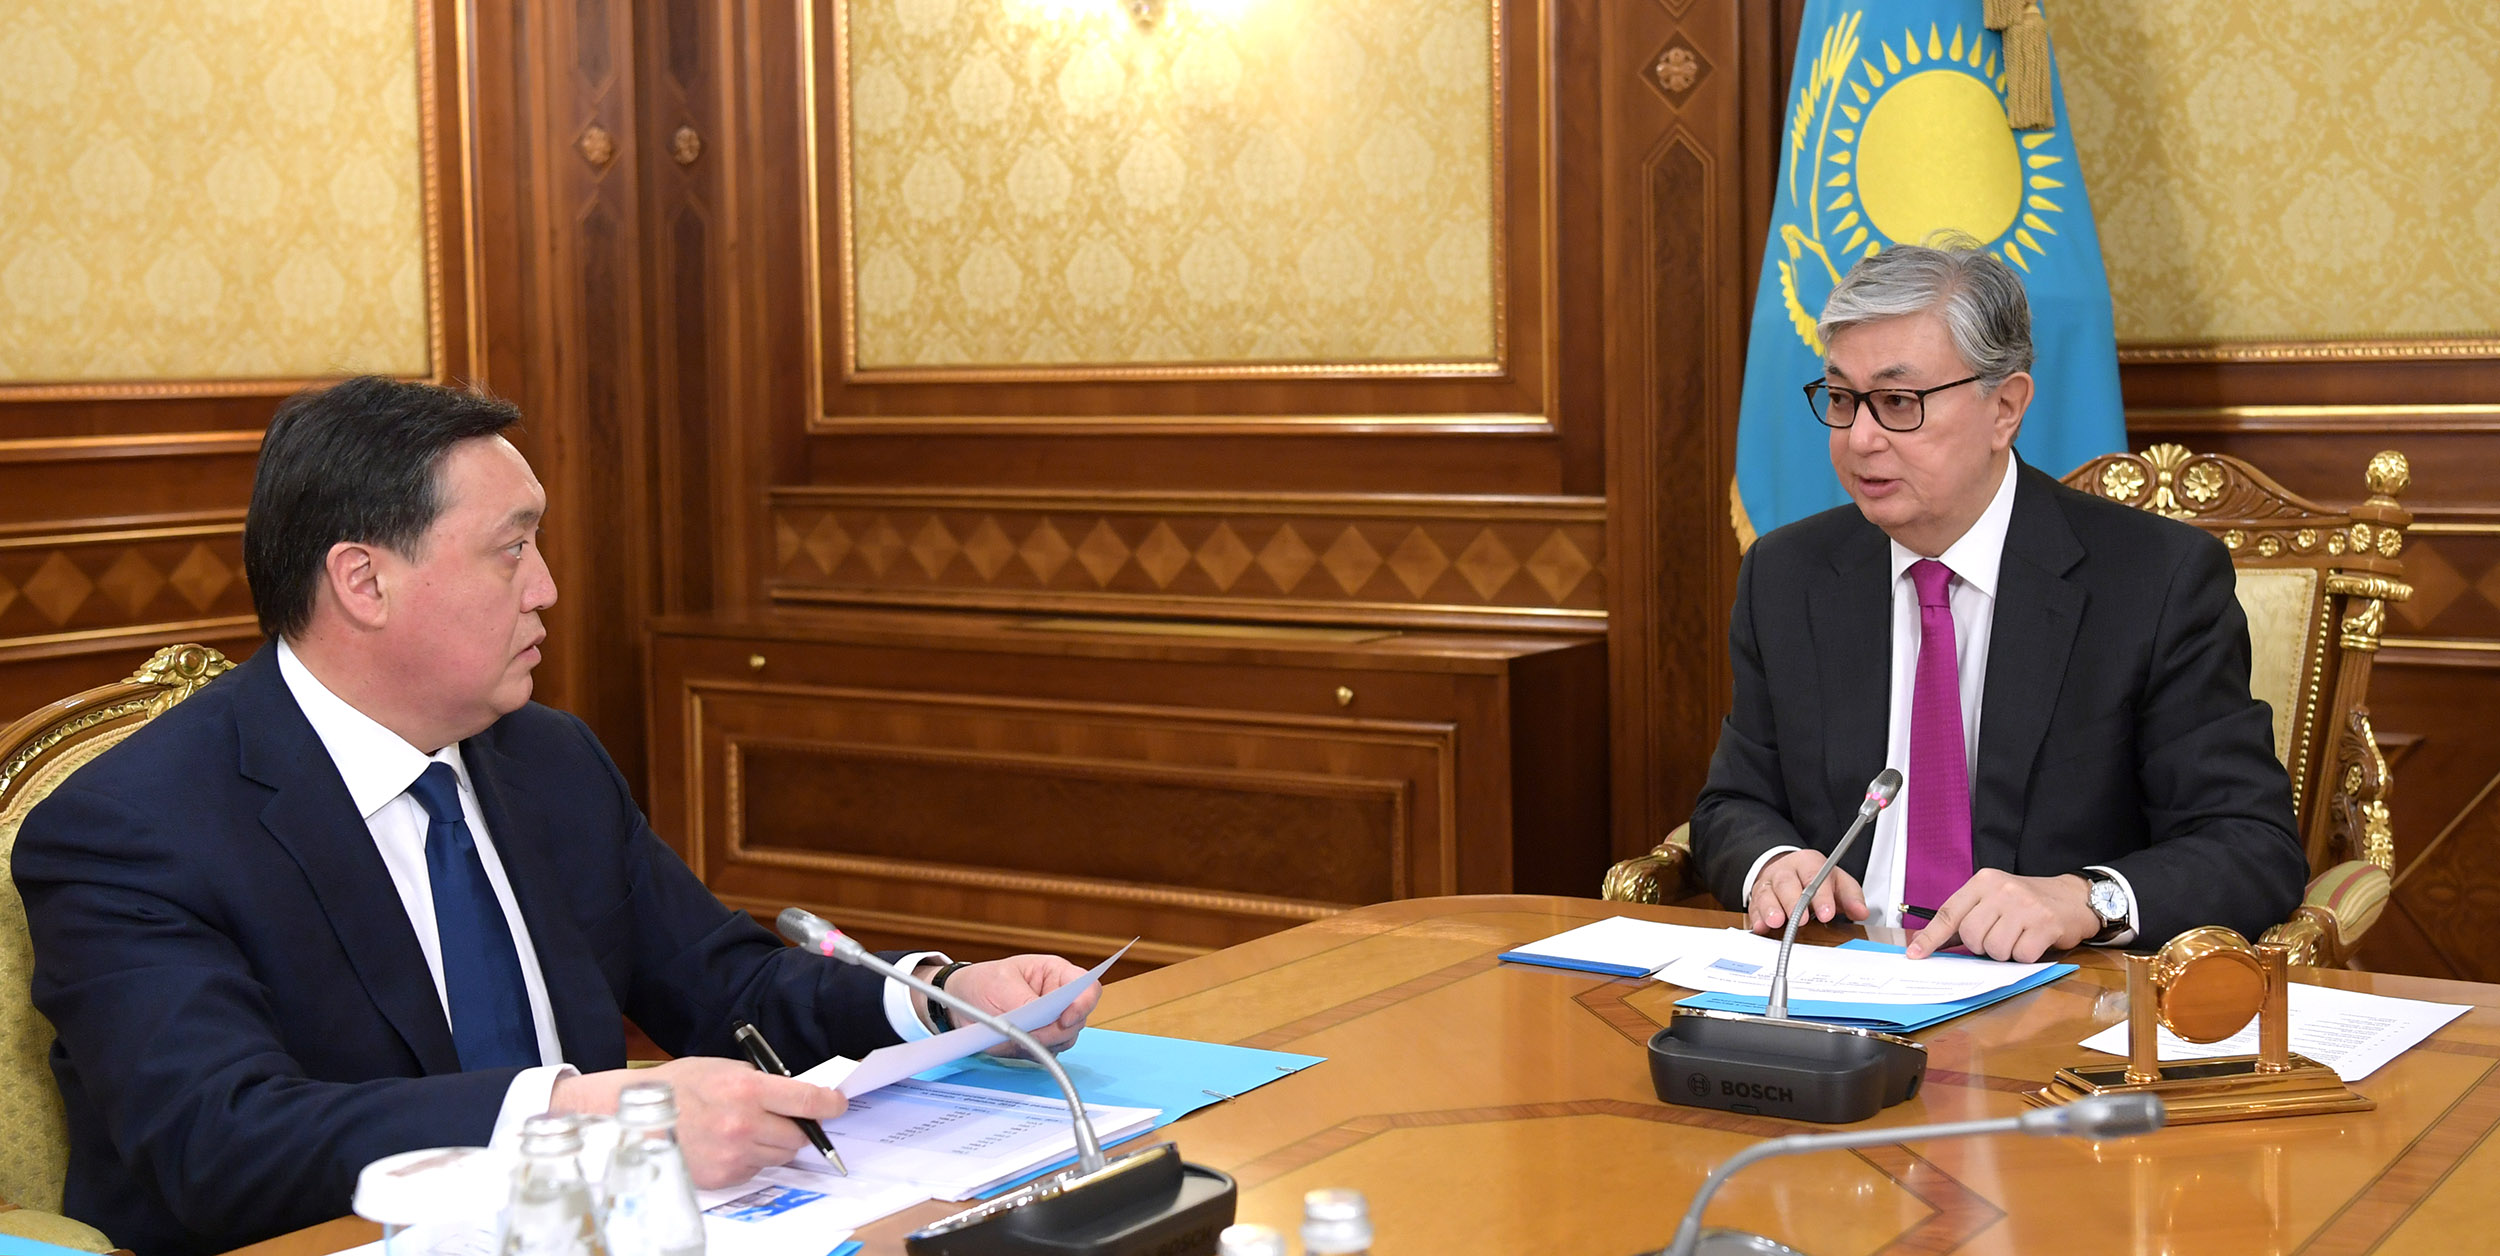 Касым-Жомарт Токаев поручил премьер-министру обеспечить качественную реализацию реформ в рамках плана нации